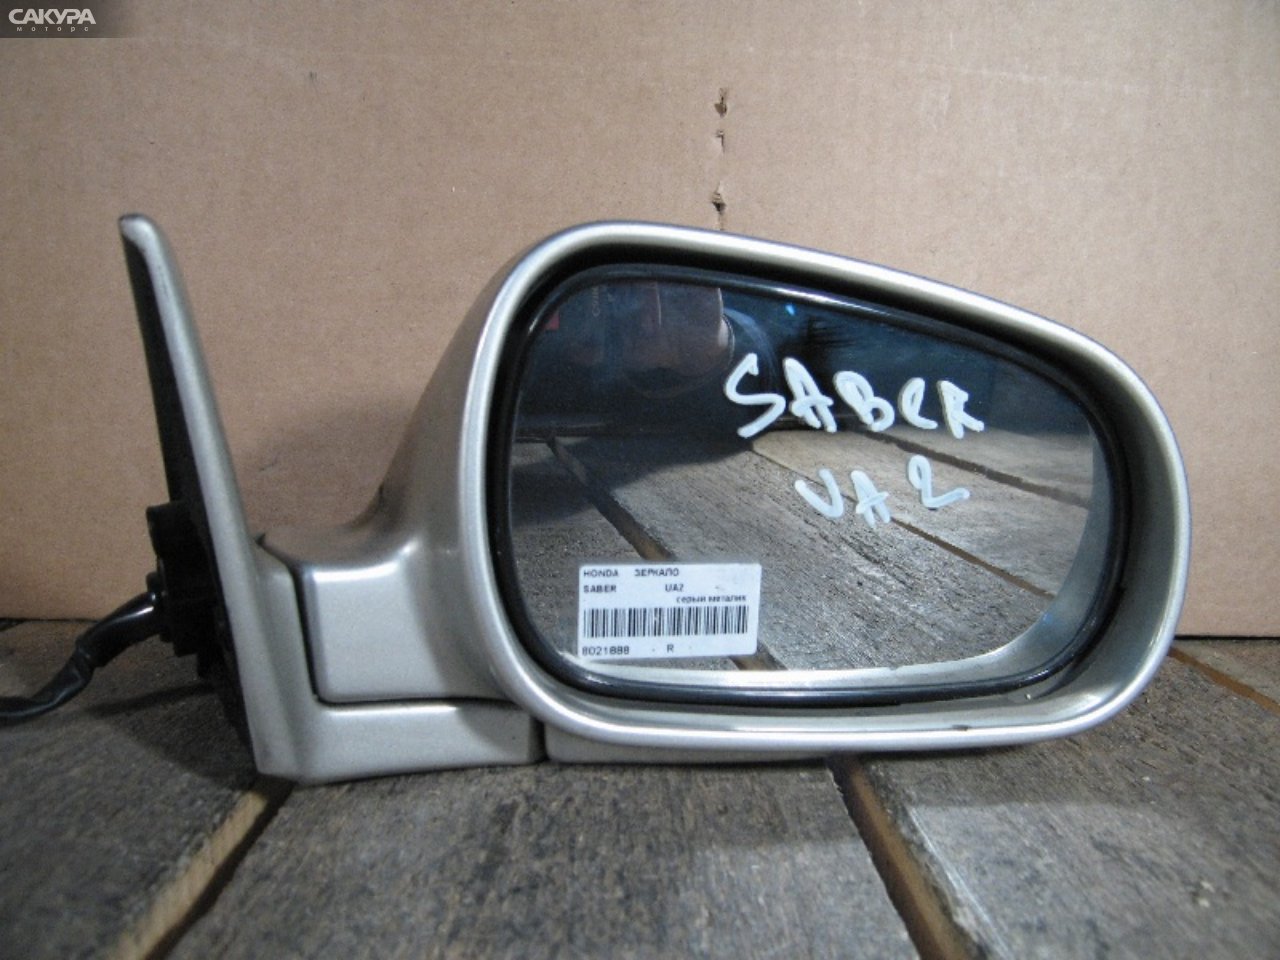 Зеркало боковое правое Honda Saber UA2: купить в Сакура Абакан.